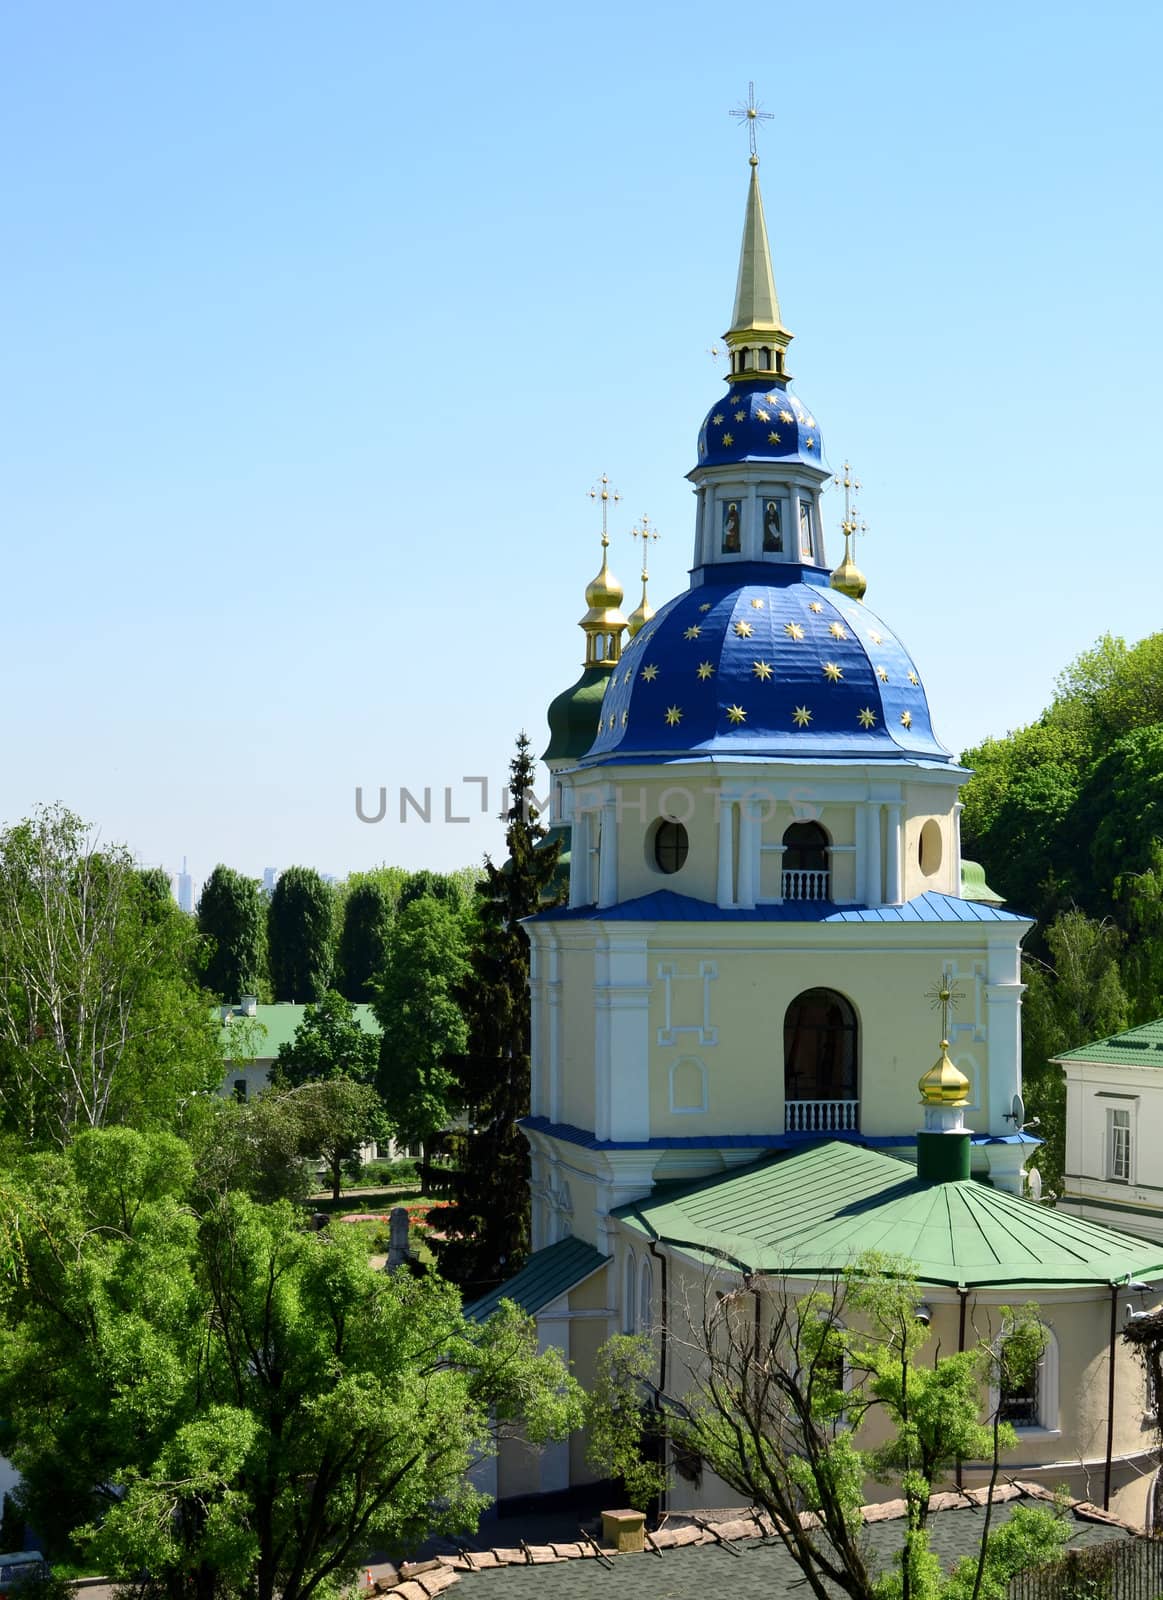 Vidubichi monastery, Kiev, Ukraine